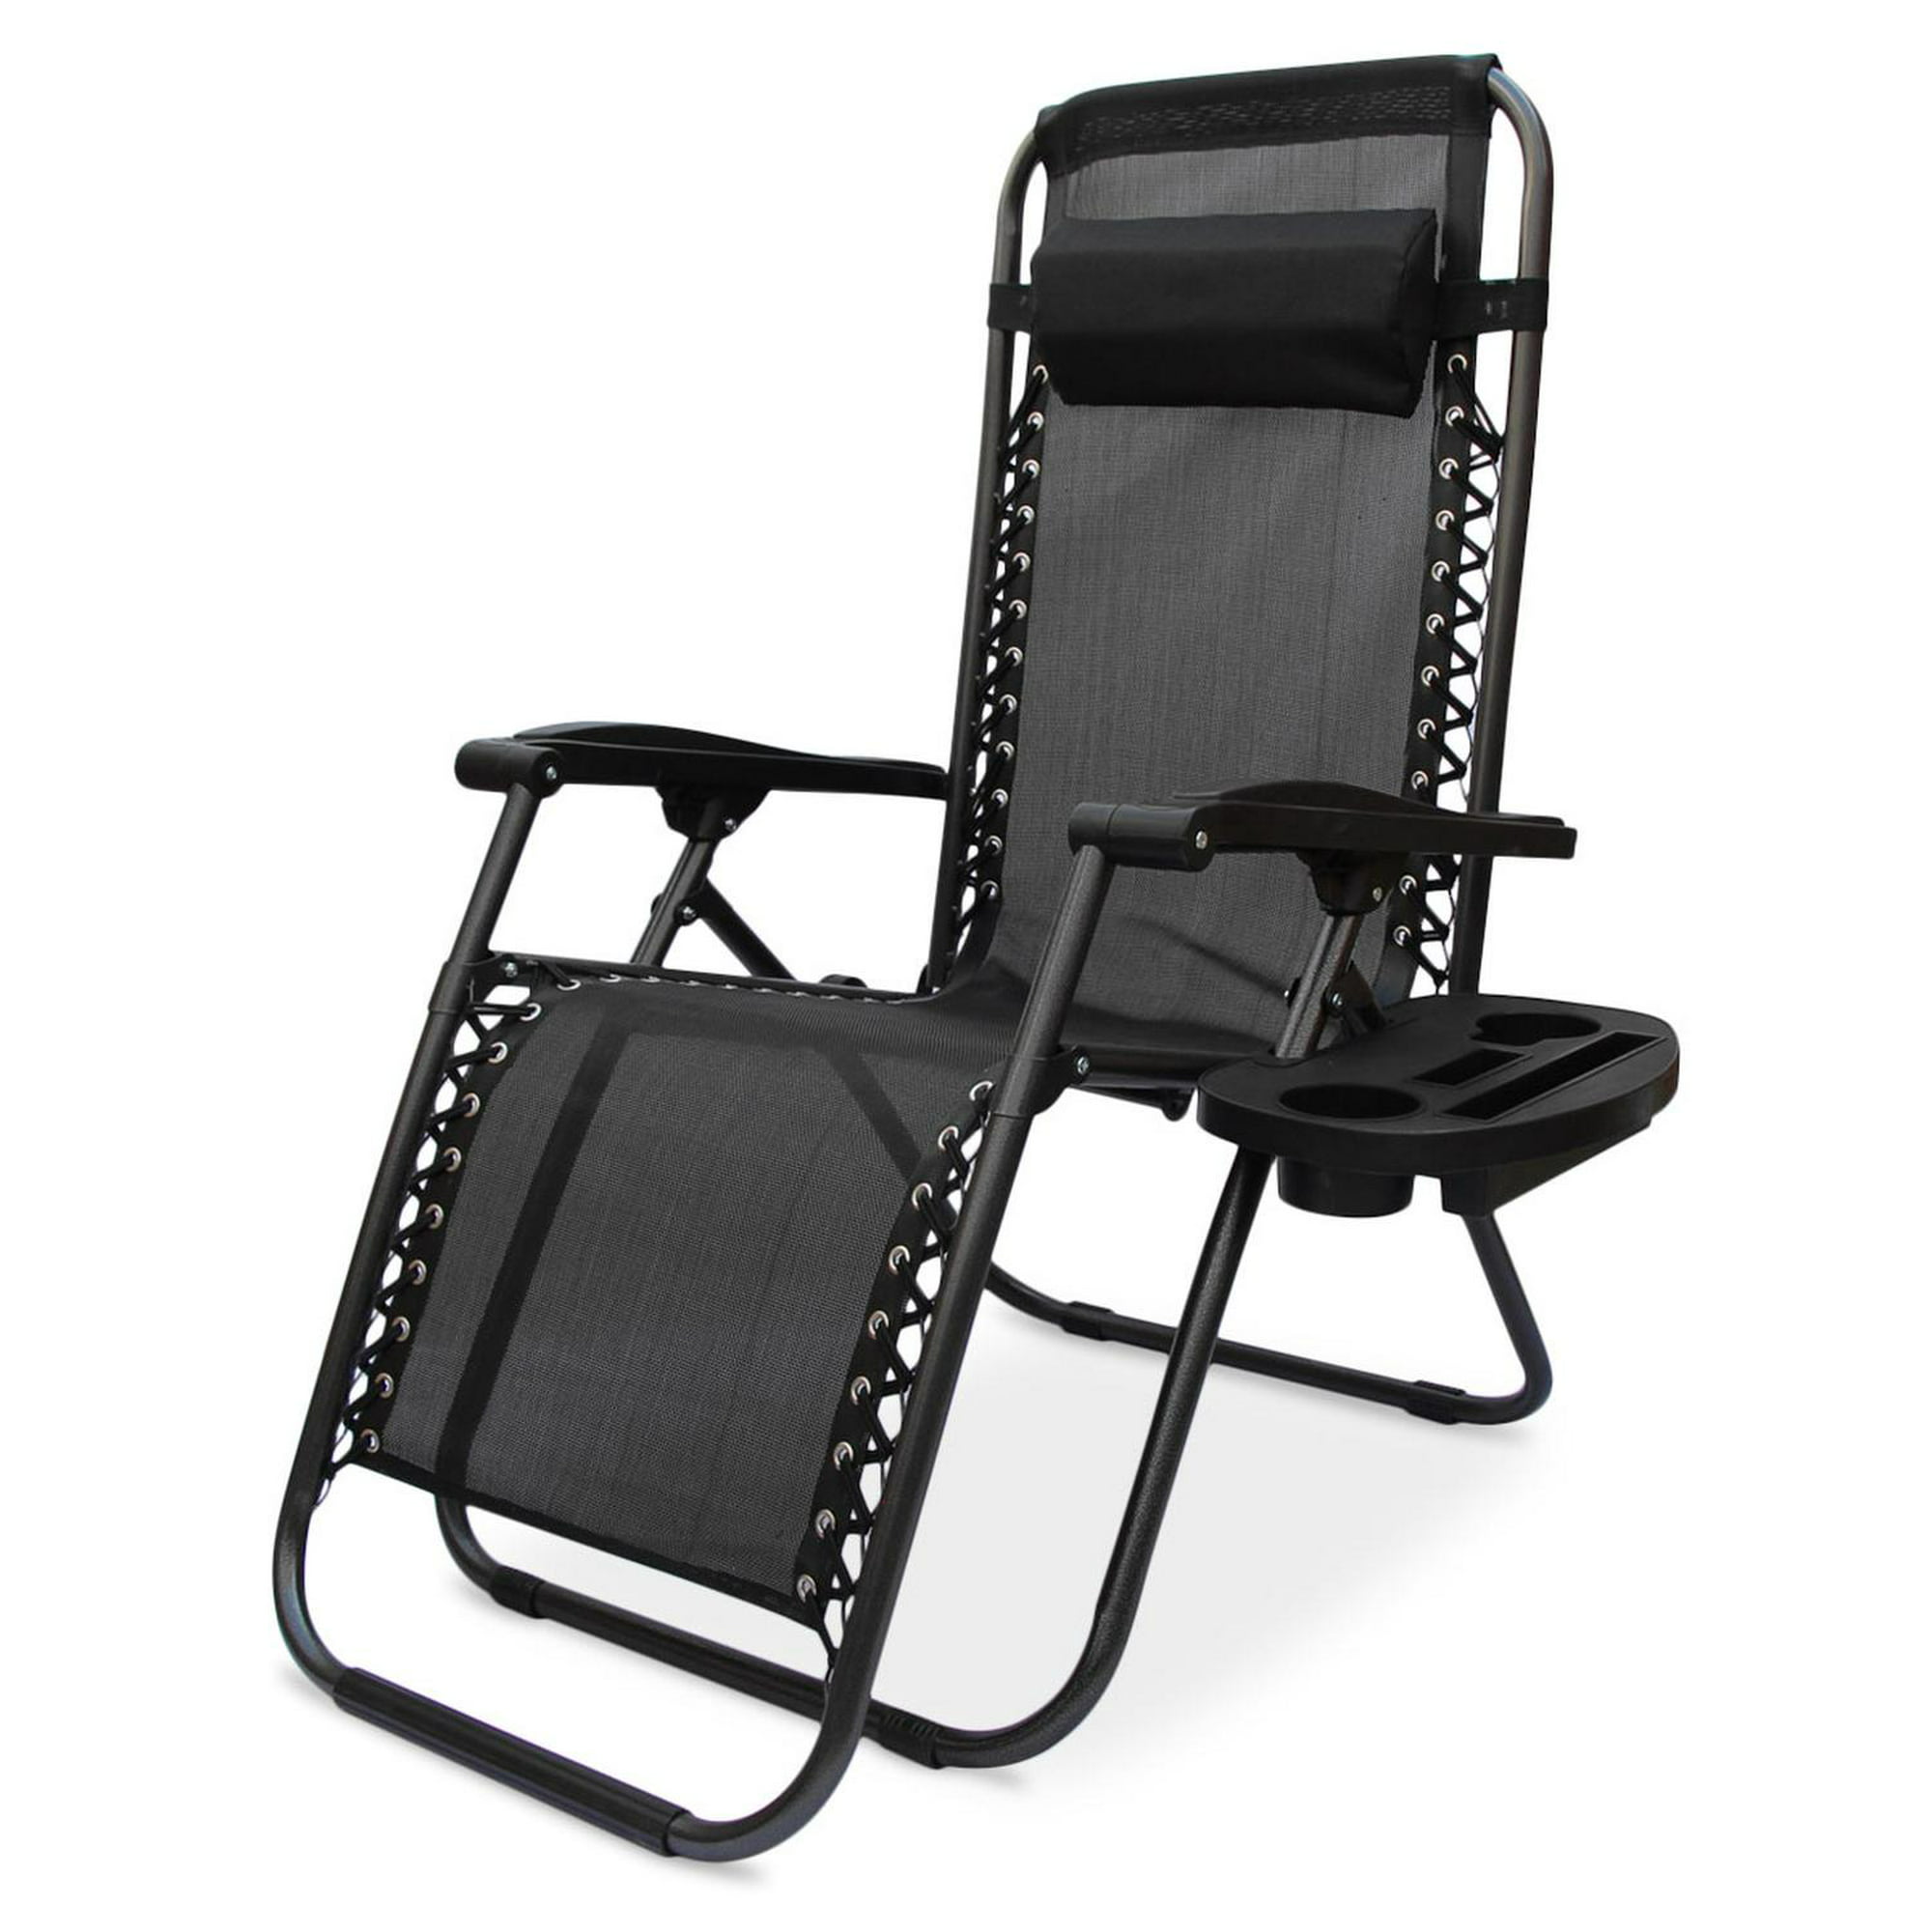 Camastro silla plegable gravedad cero jardimanía beige loungechair negro jardimanía loungechair